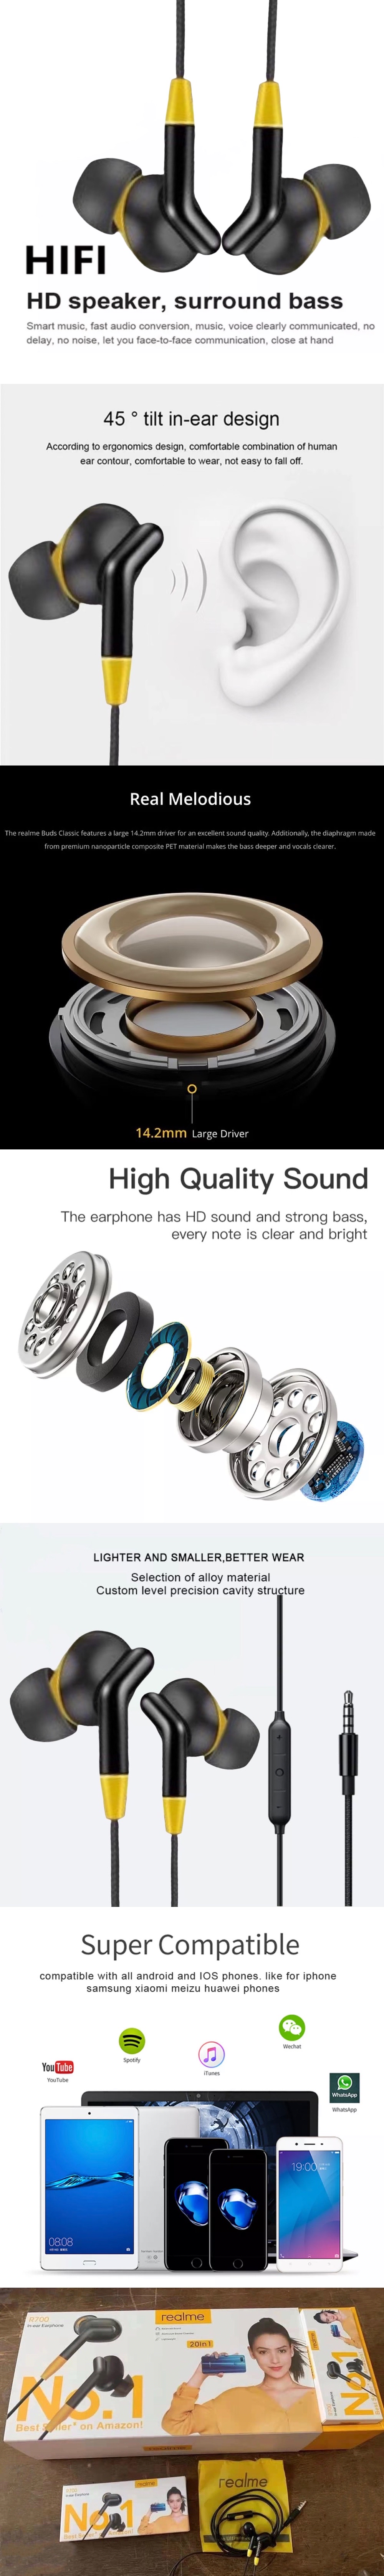 ภาพประกอบของ หูฟังเรียวมี Realme R700 In-ear Earphone ของแท้ เสียงดี ช่องเสียบแบบ 3.5 mm Jack ใหม่ล่าสุด รับประกัน1ปี BY THEAODIGITAL